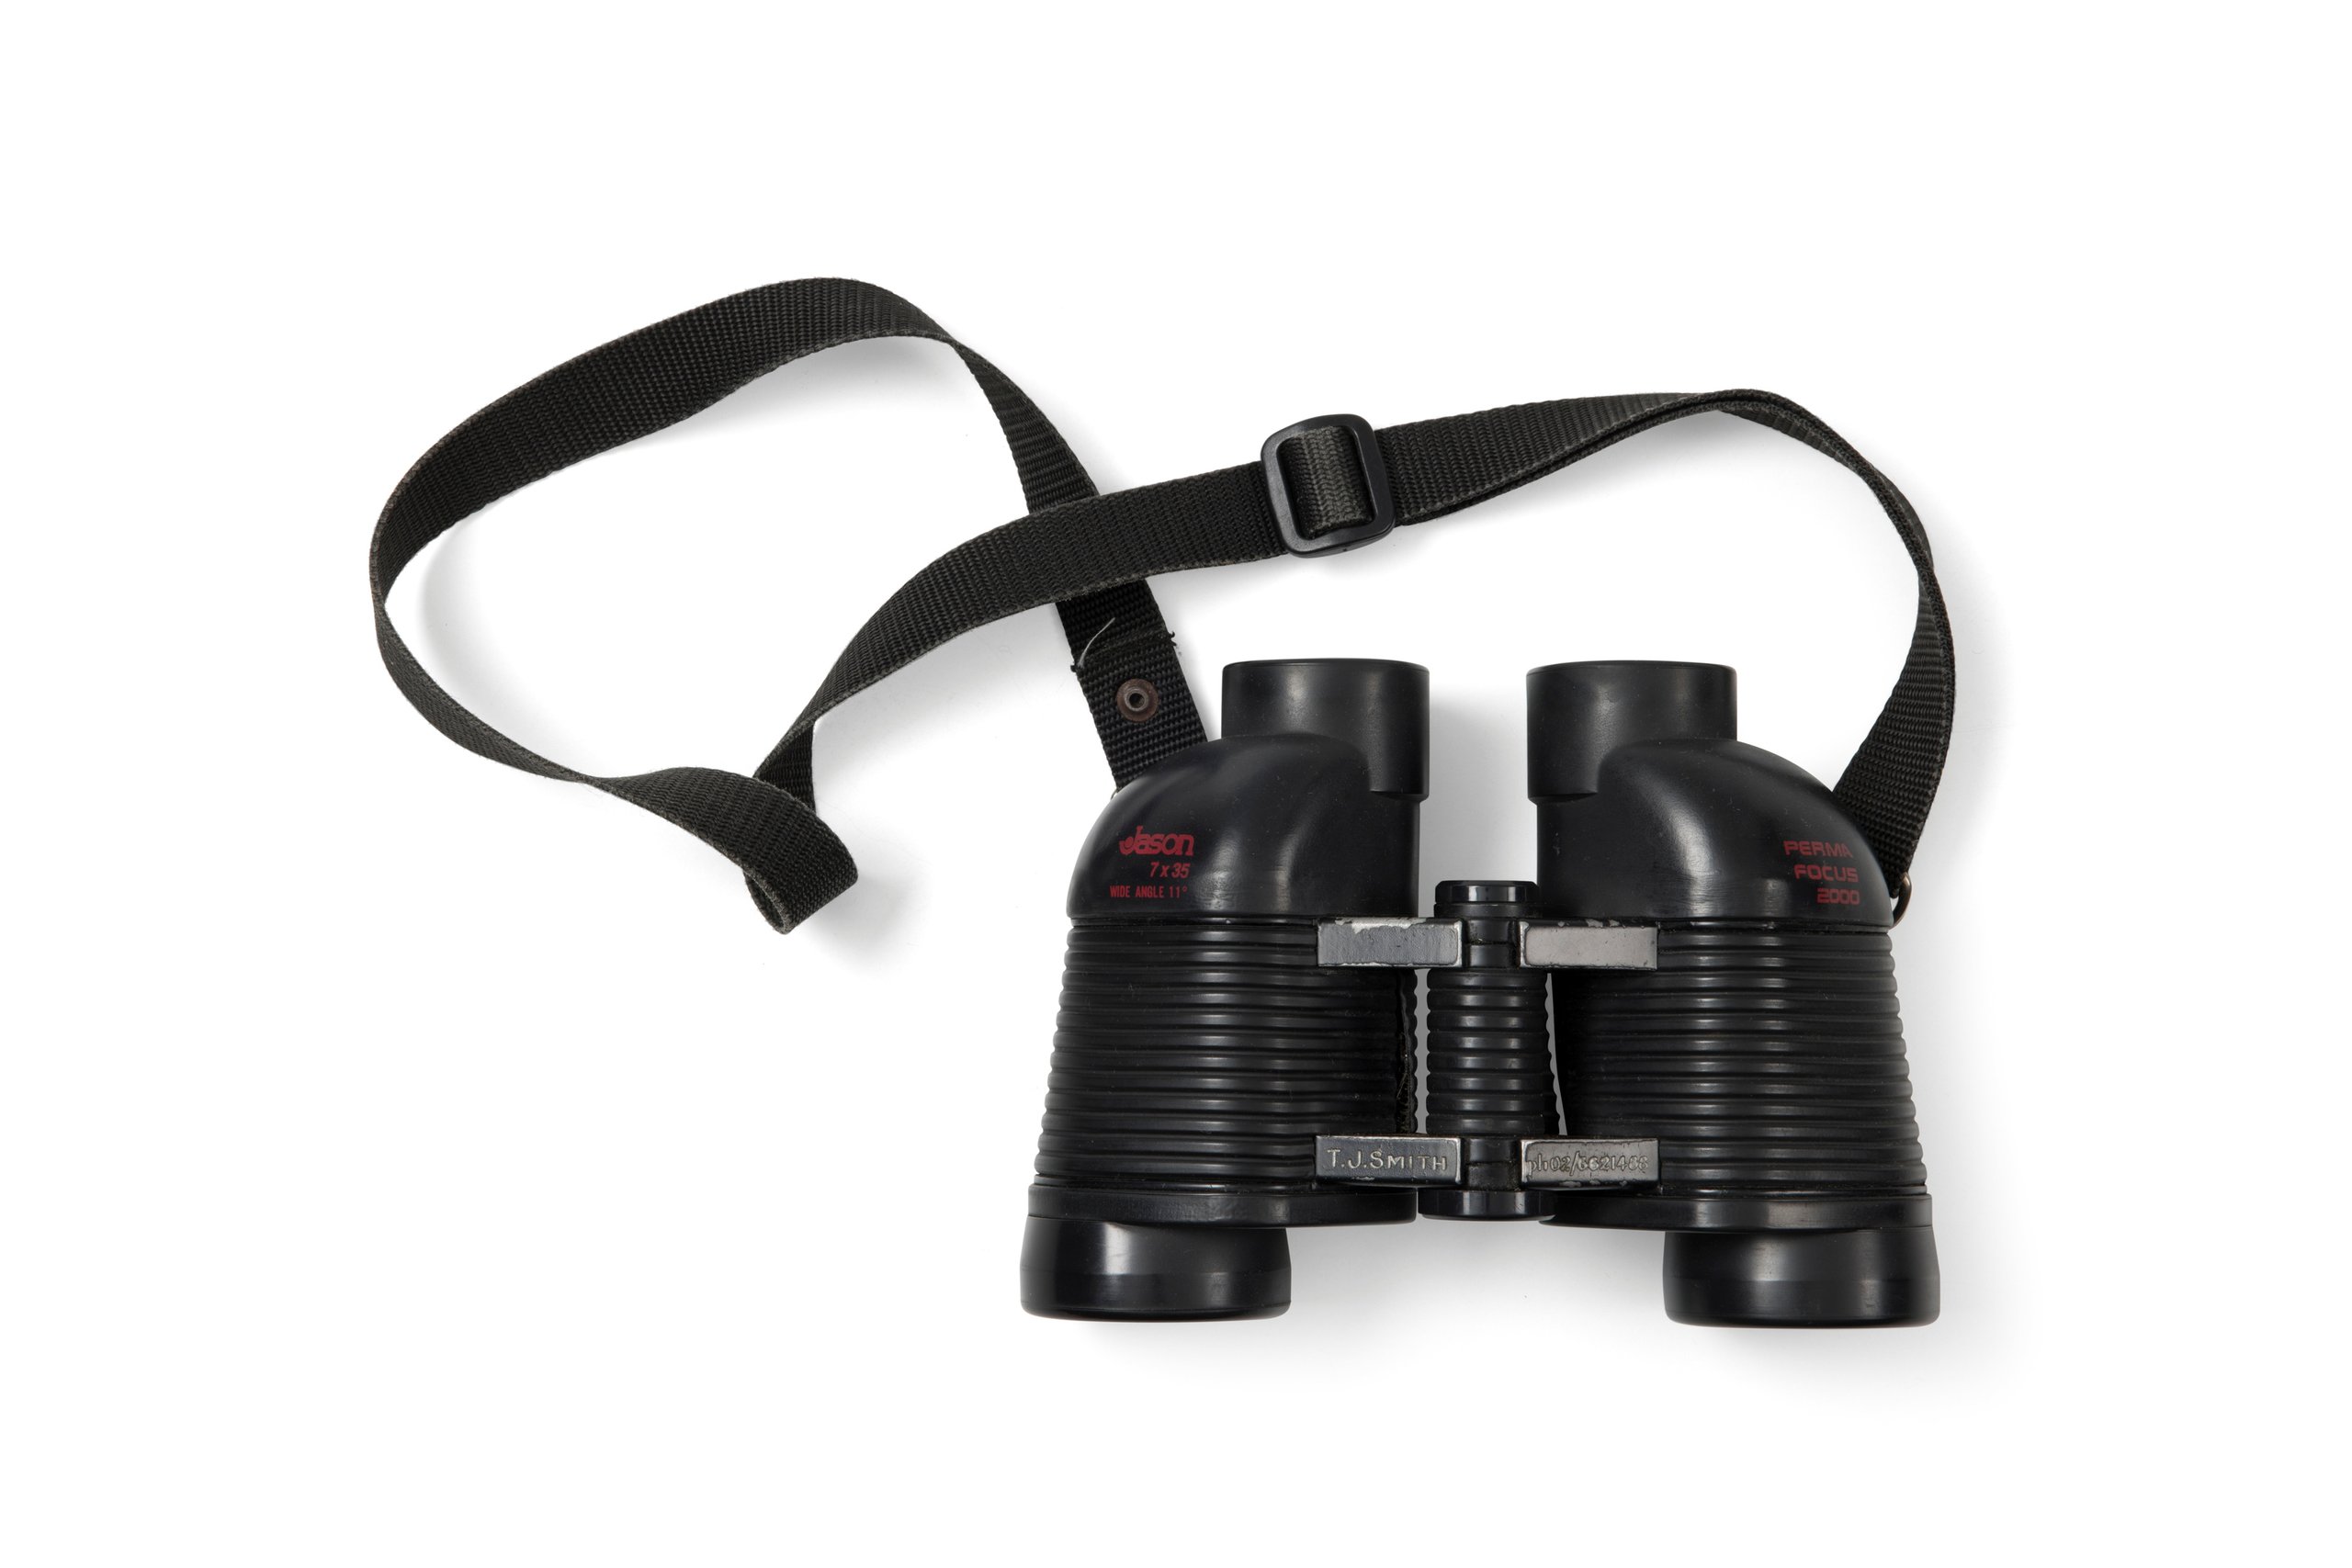 Powerhouse Collection - Binoculars made by Jason Binoculars and